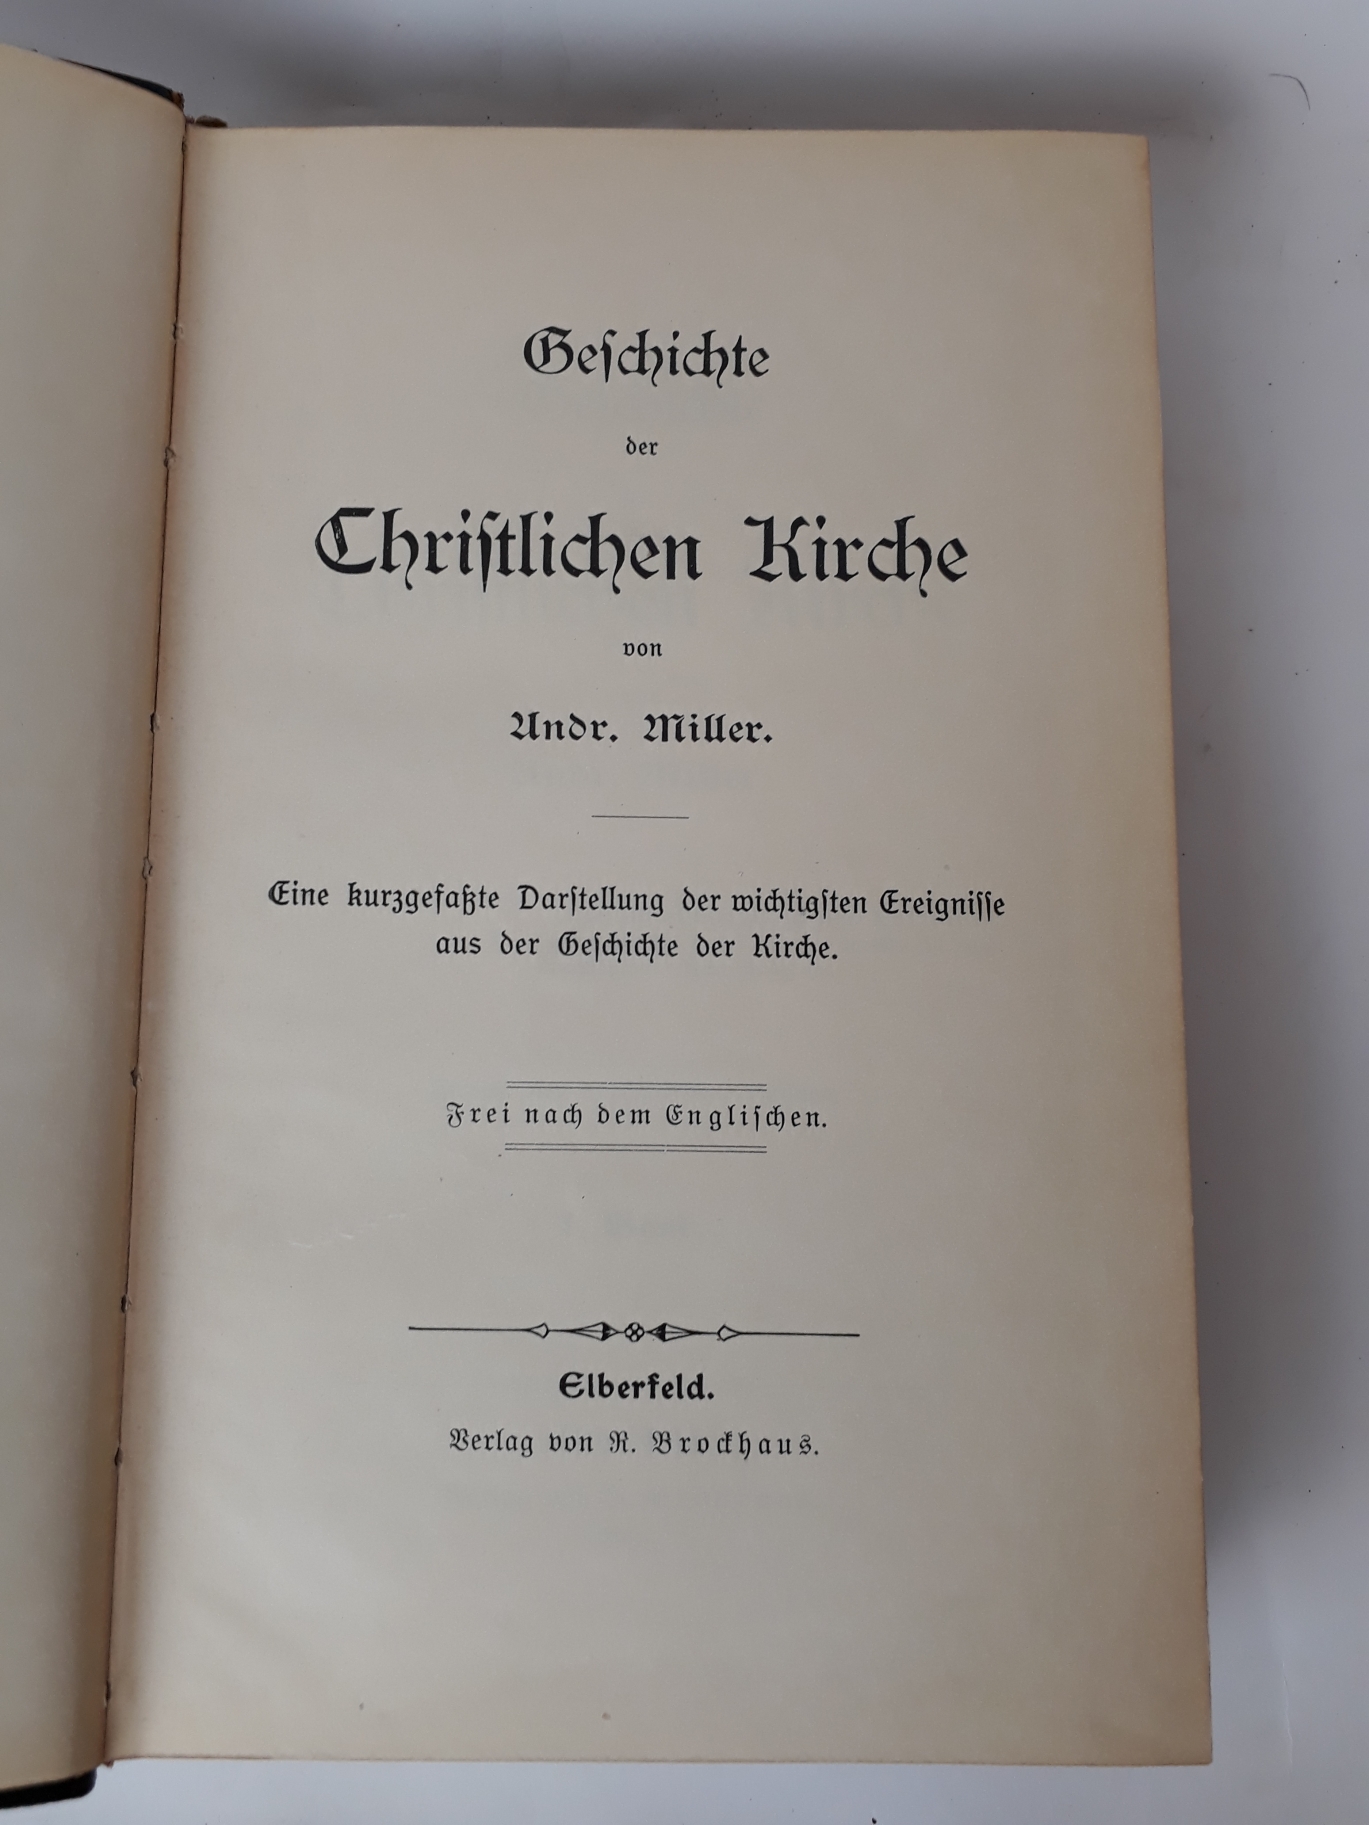 Miller, Andr.: Geschichte der Christlichen Kirche 1. Band